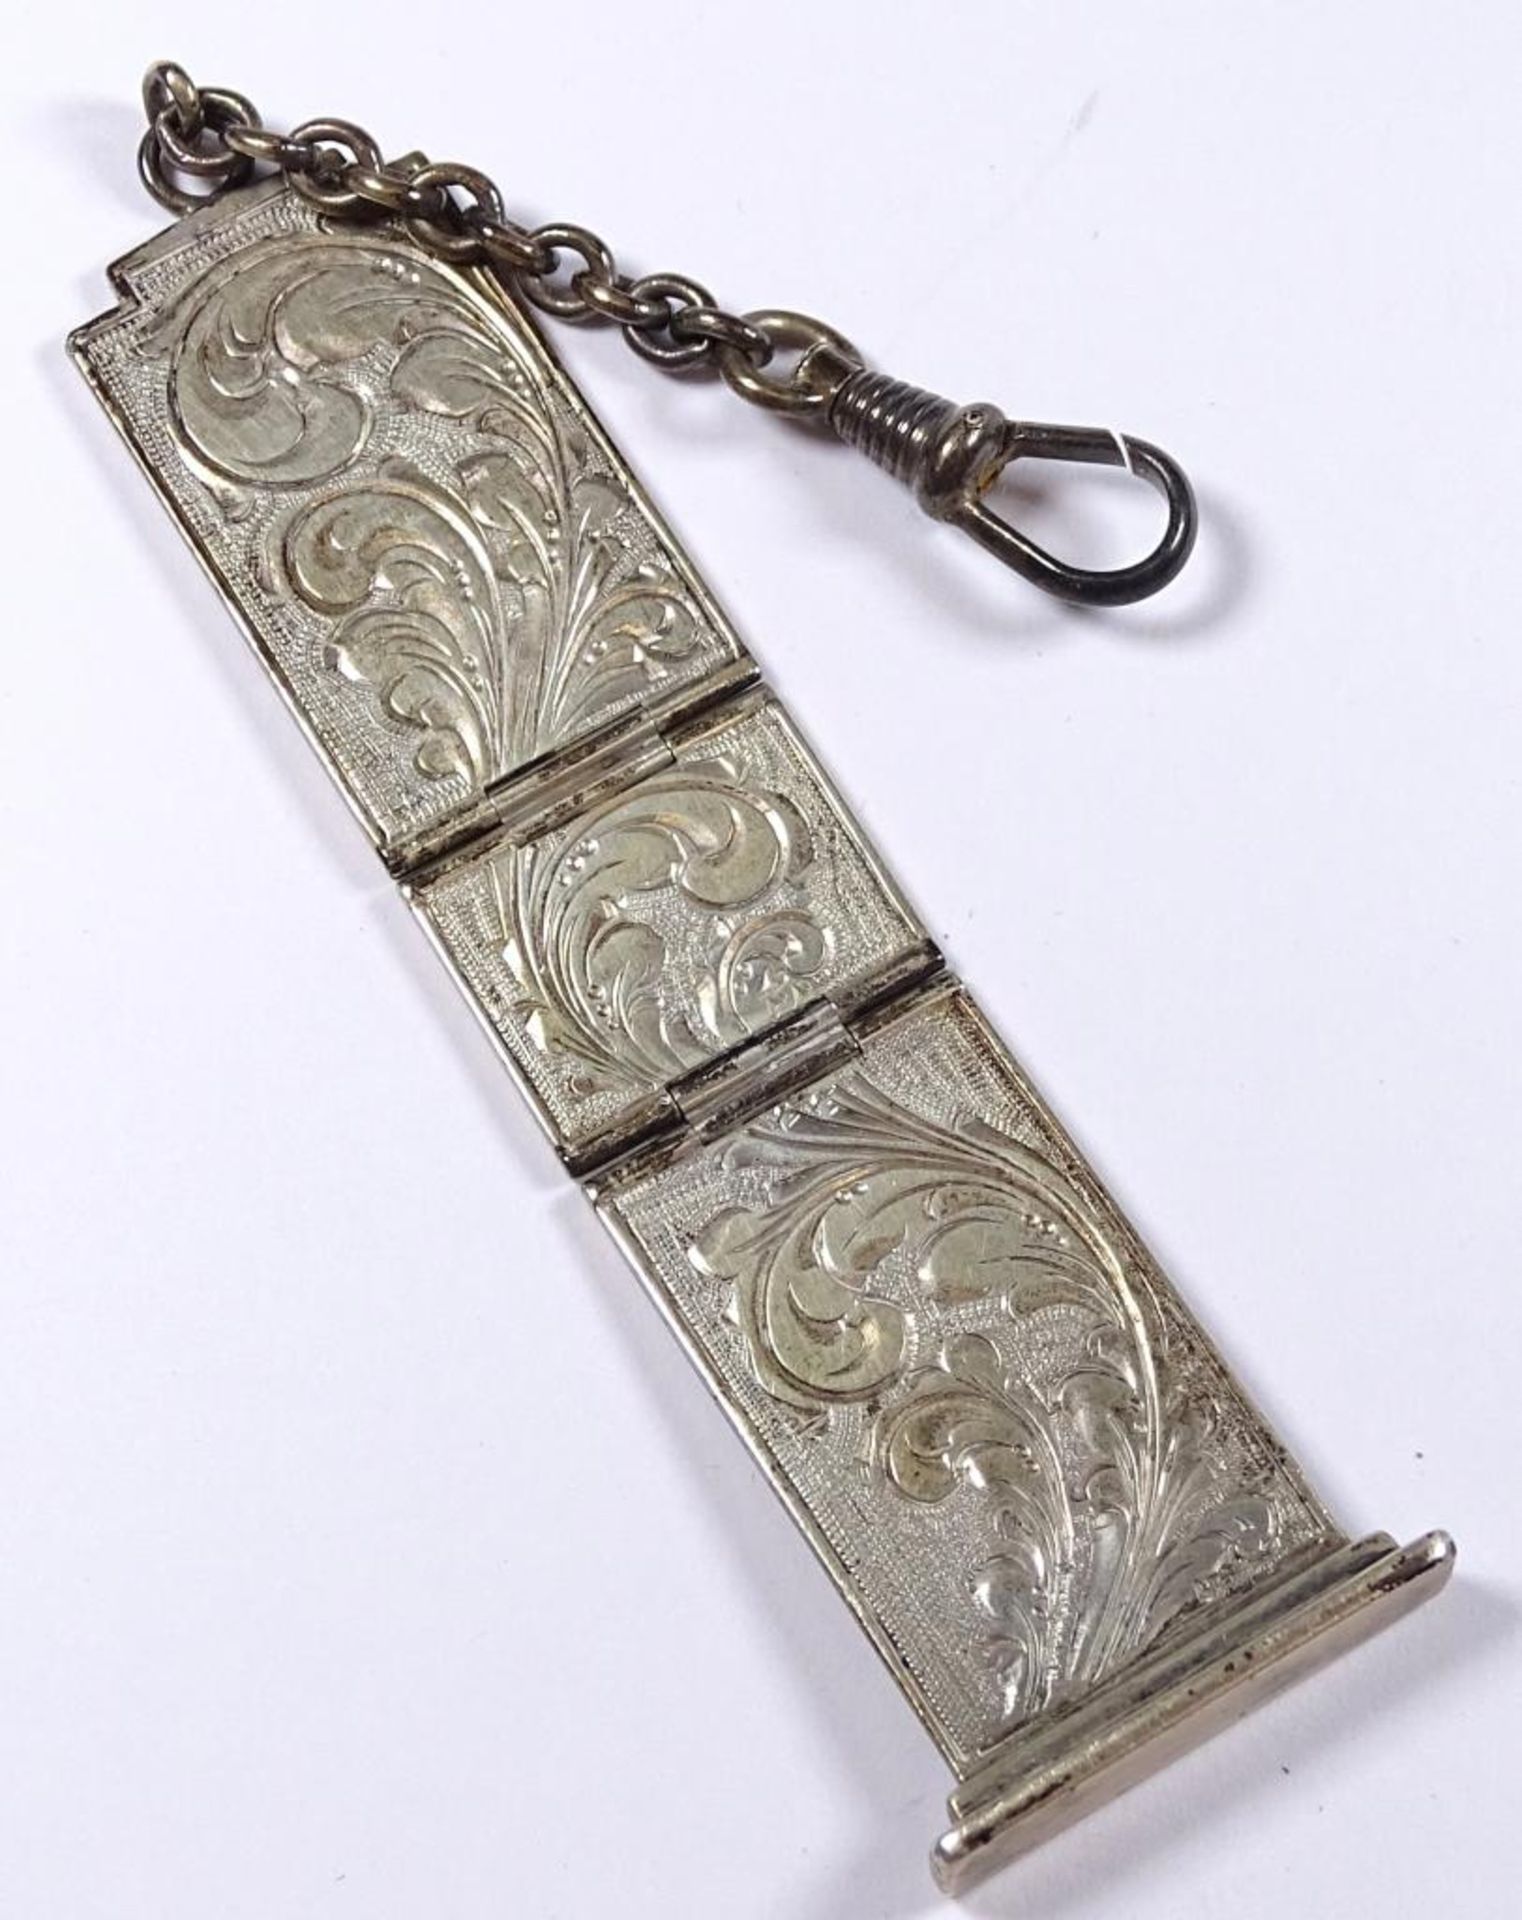 Uhren Chatelaine,Silber -830-,L-. 13,5cm,21,3gr. - Bild 2 aus 2